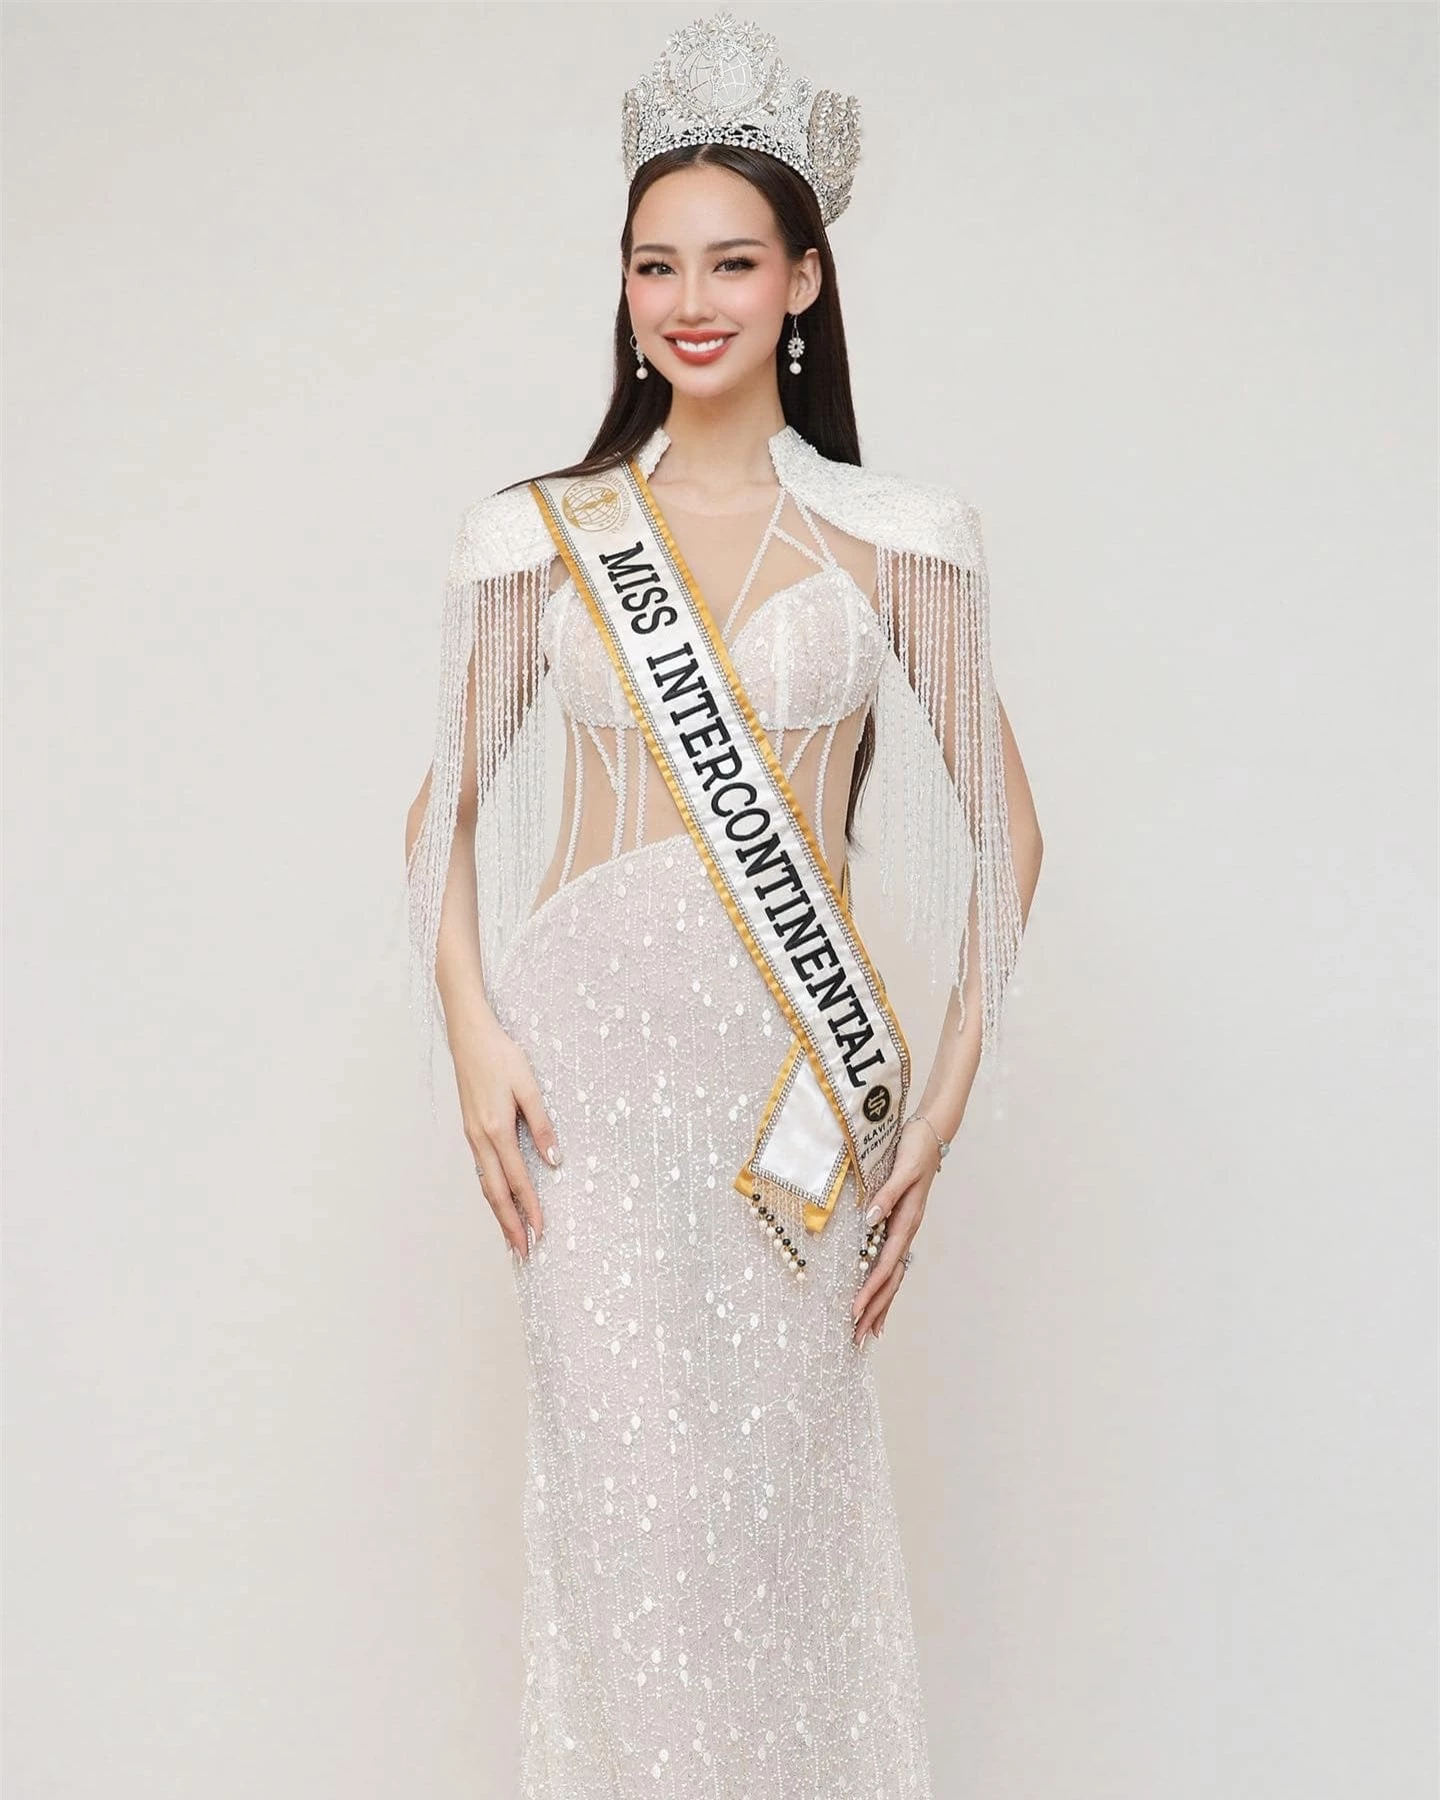 Bảo Ngọc mặc táo bạo khi sắp hết nhiệm kỳ Hoa hậu Liên lục địa ảnh 5